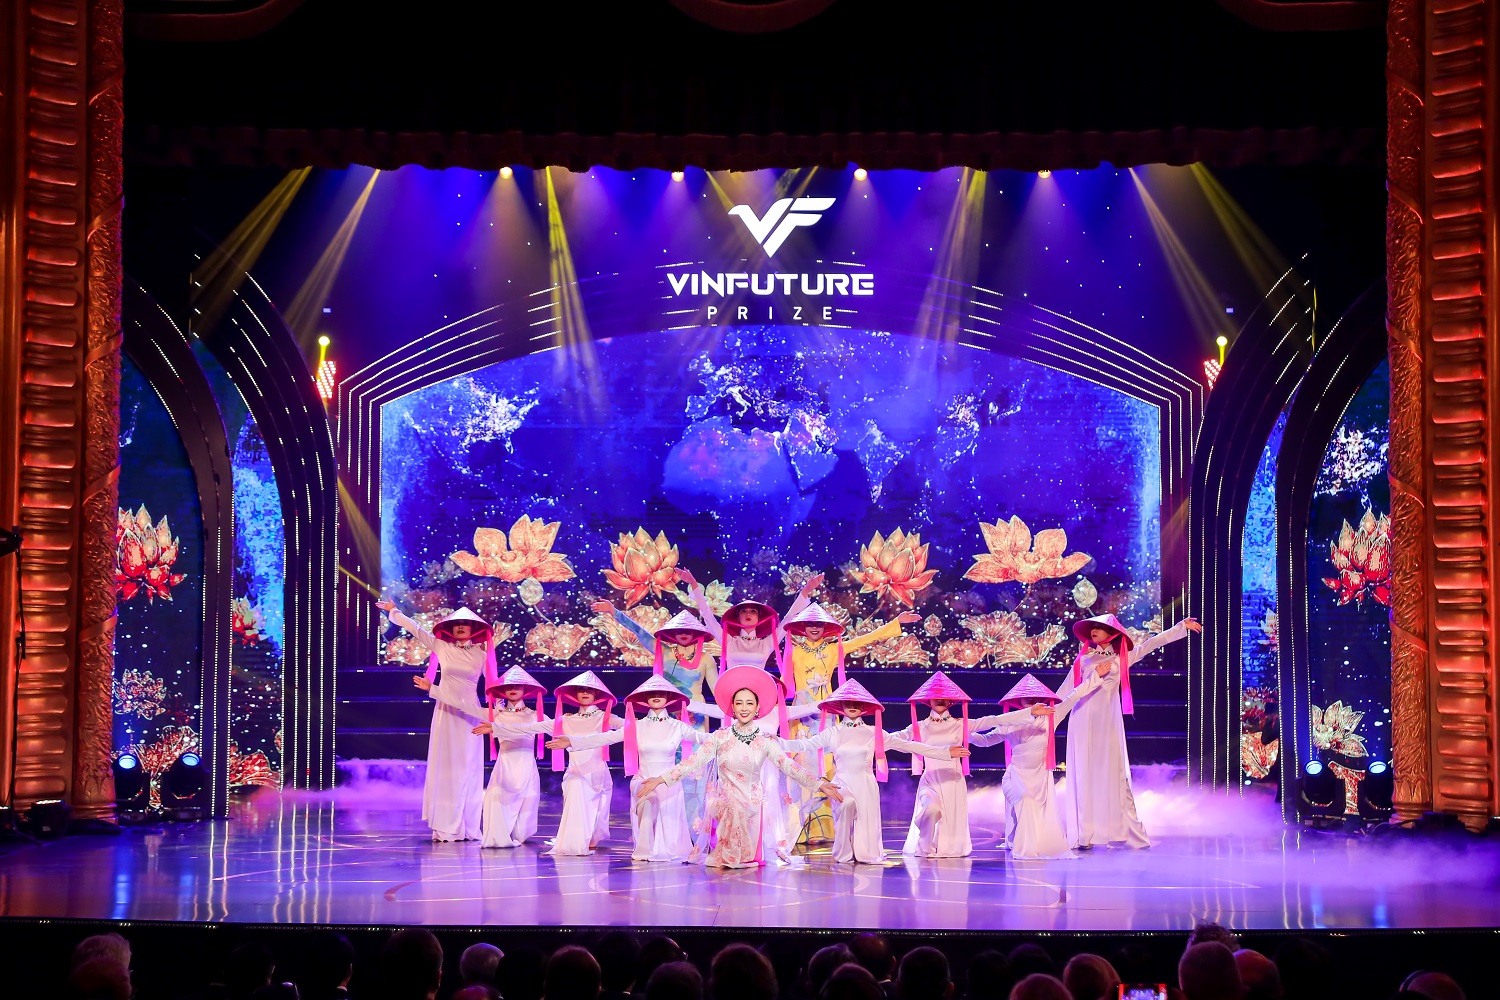 Sự kiện Lễ trao giải VinFuture 2022 sẽ được tổ chức vào tối 20/12/2022 tại Nhà hát lớn Hà Nội với nhiều chương trình biểu diễn nghệ thuật đặc sắc